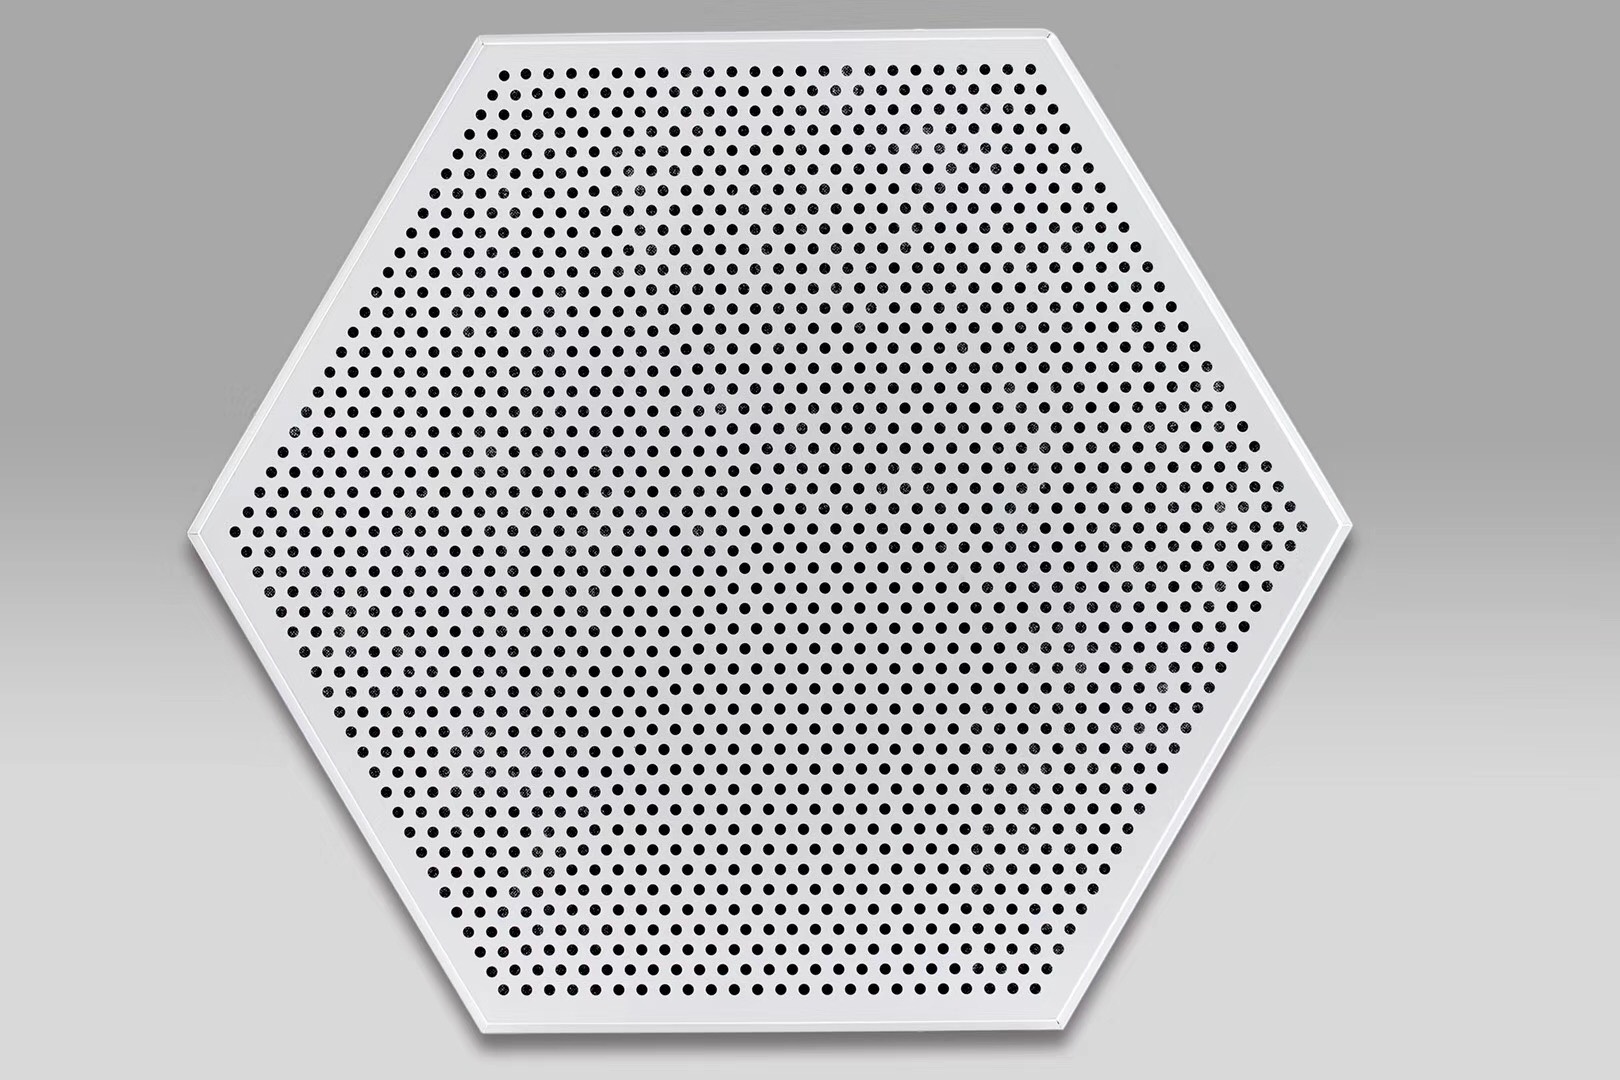 Trần nhôm Lục giác Hexagon